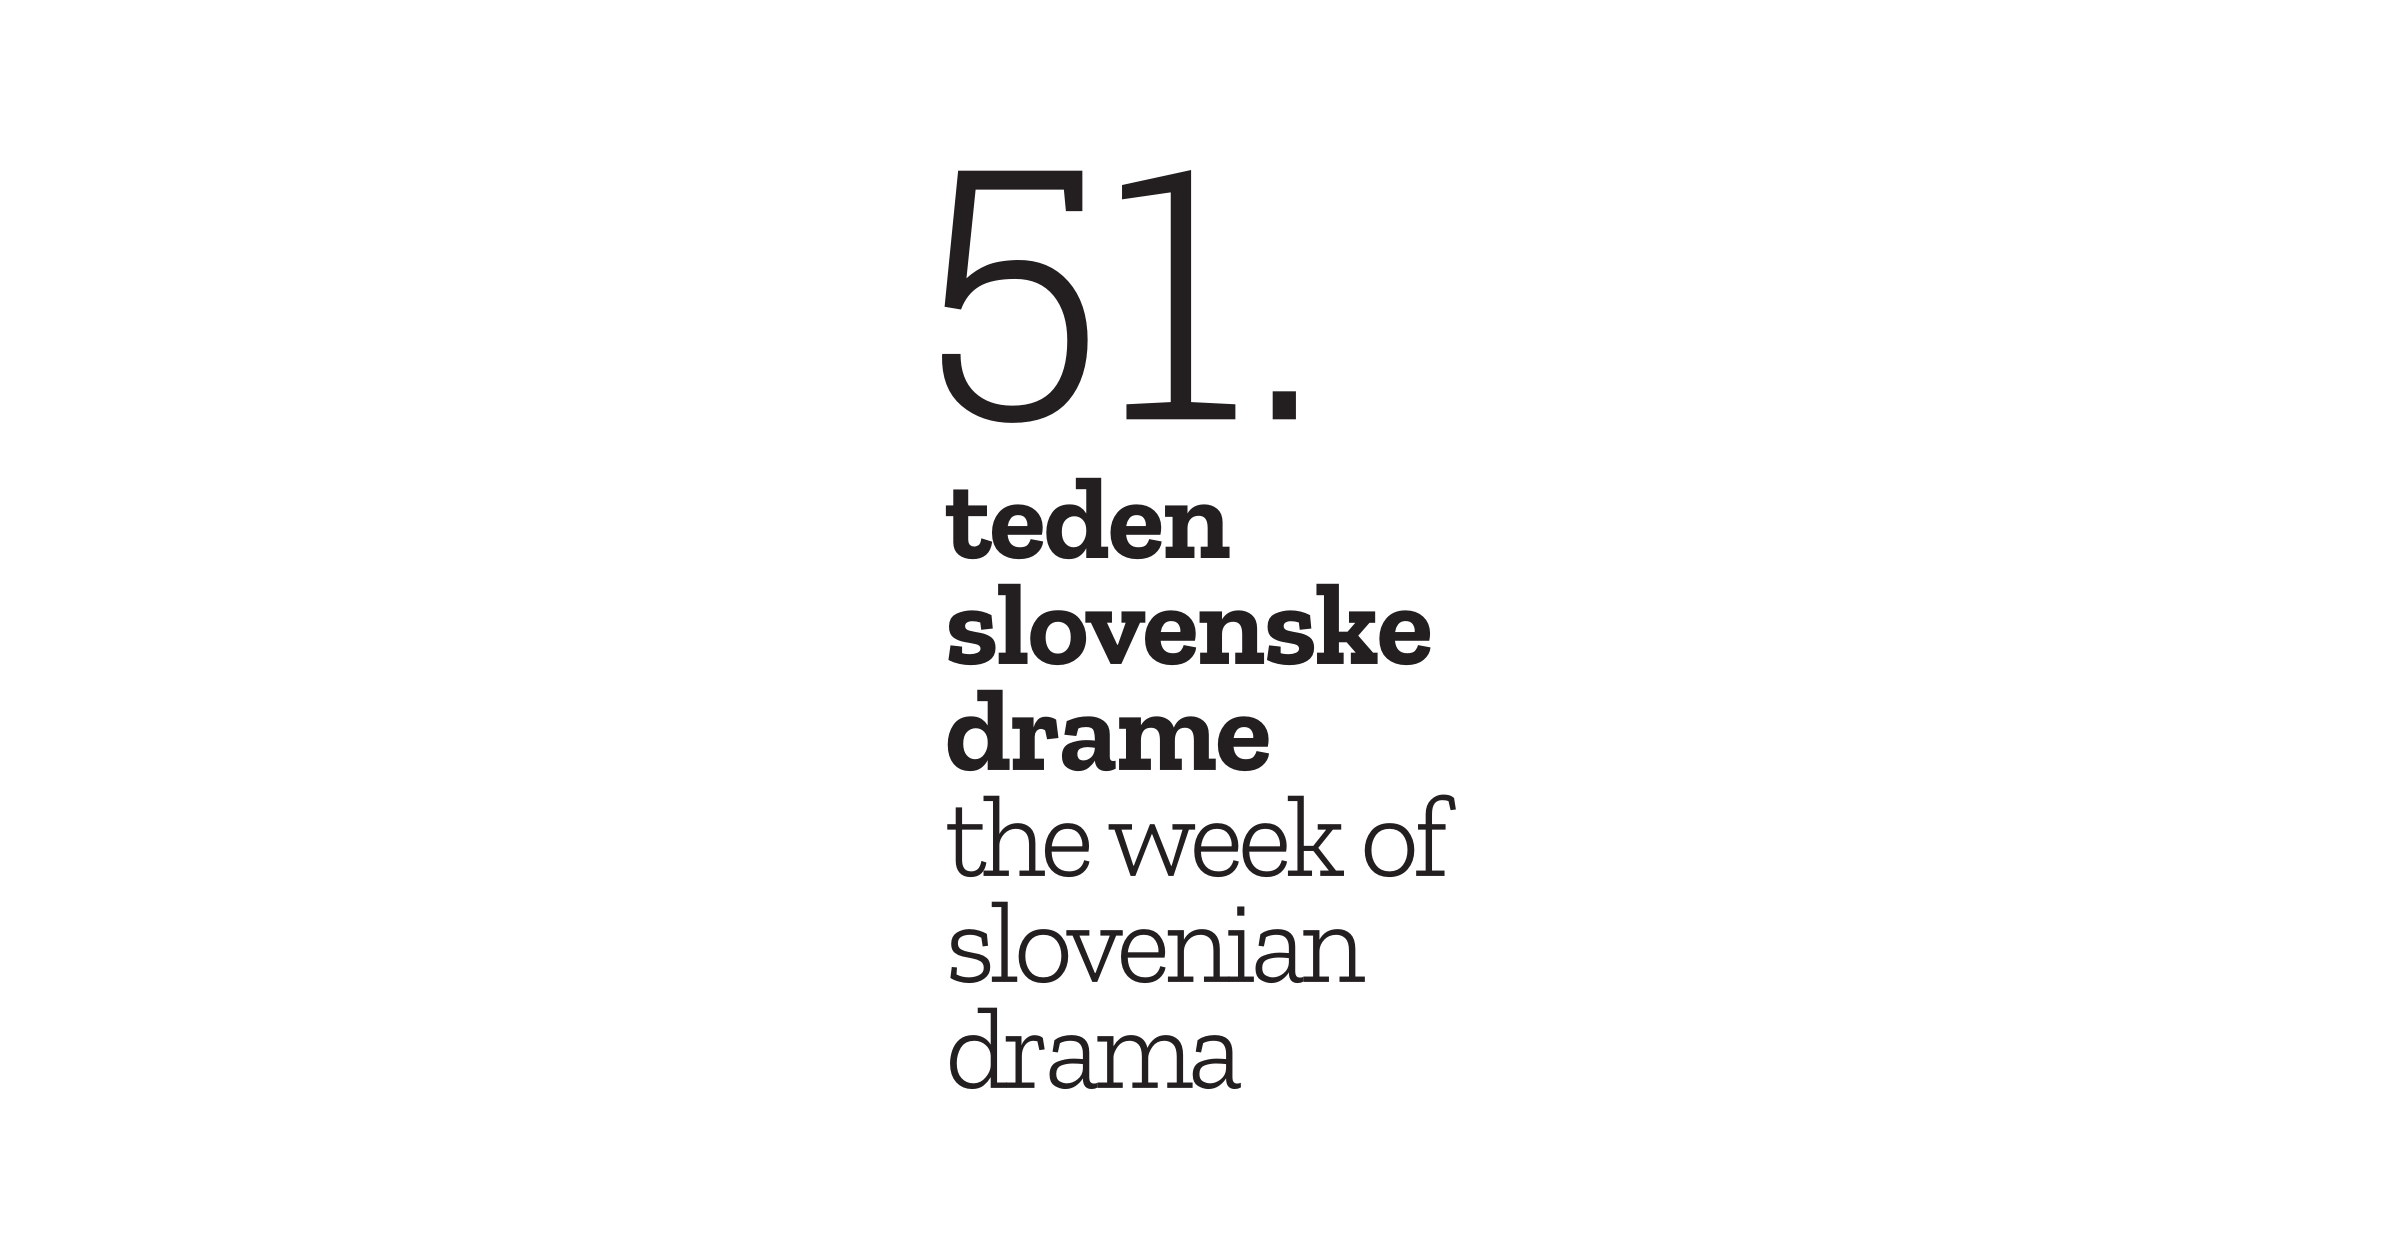 mestno-gledali-e-ljubljansko-mgl-ljubljana-51-teden-slovenske-drame